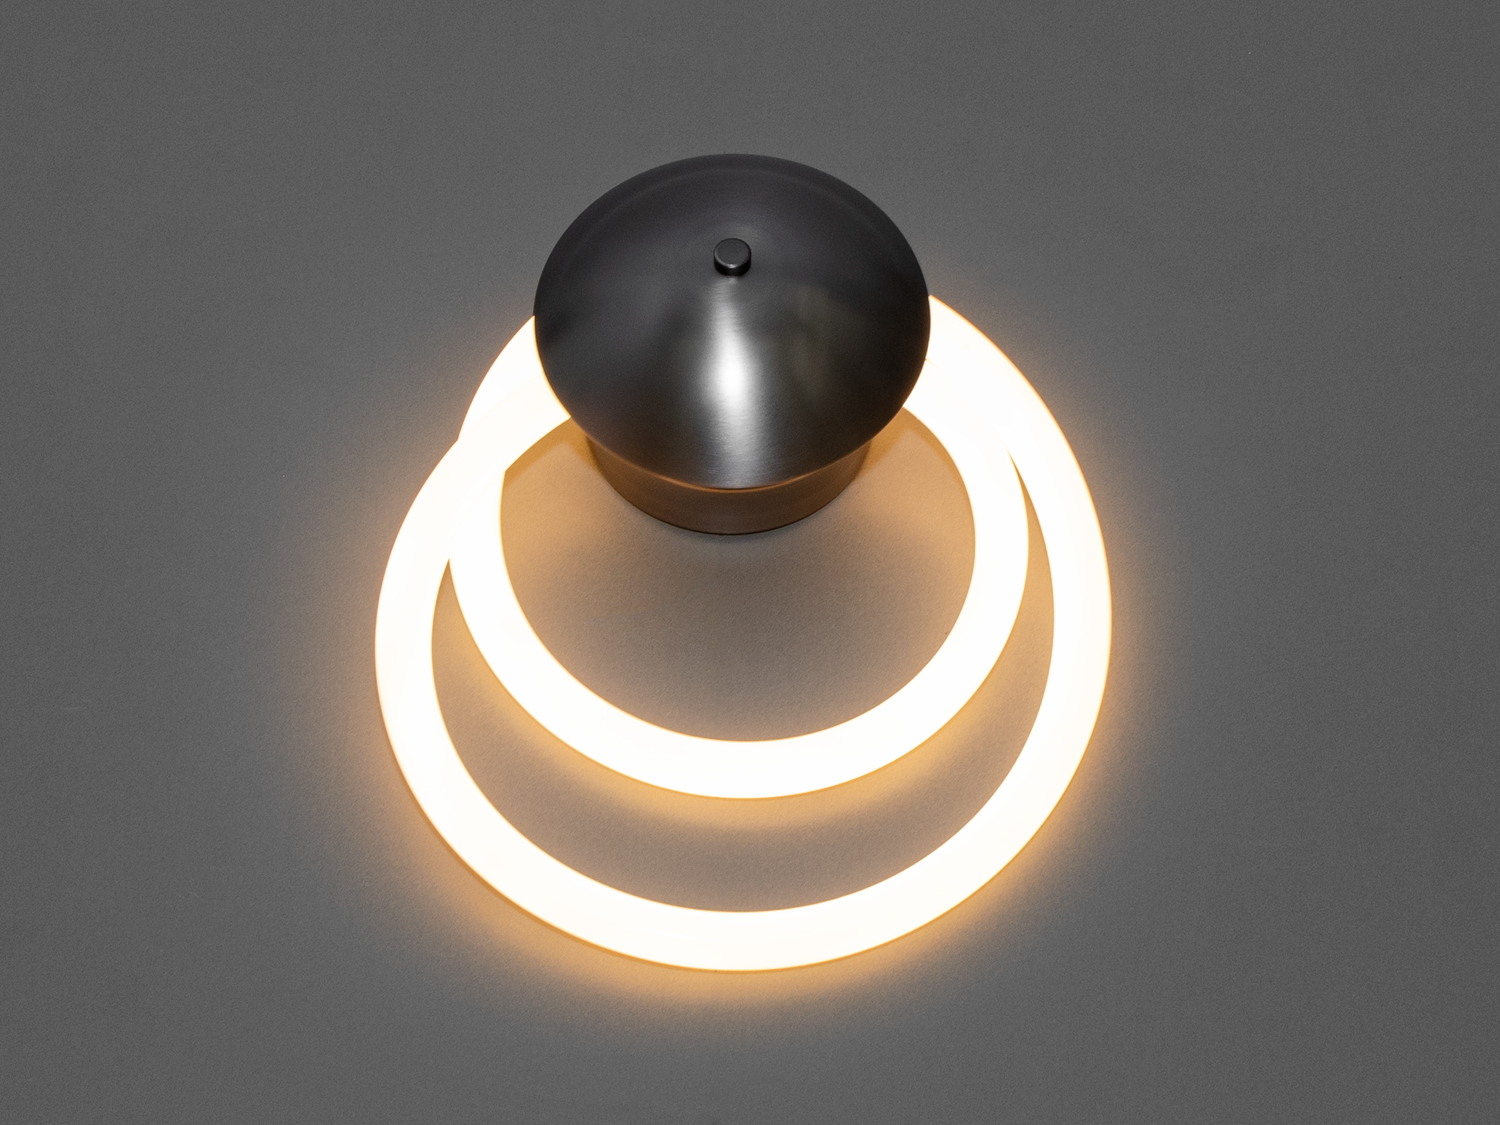 Світлодіодний настінний світильник Шланг, 16W, чорний хромСветодиодные бра, Светильники LED, Потолочные, Серия 